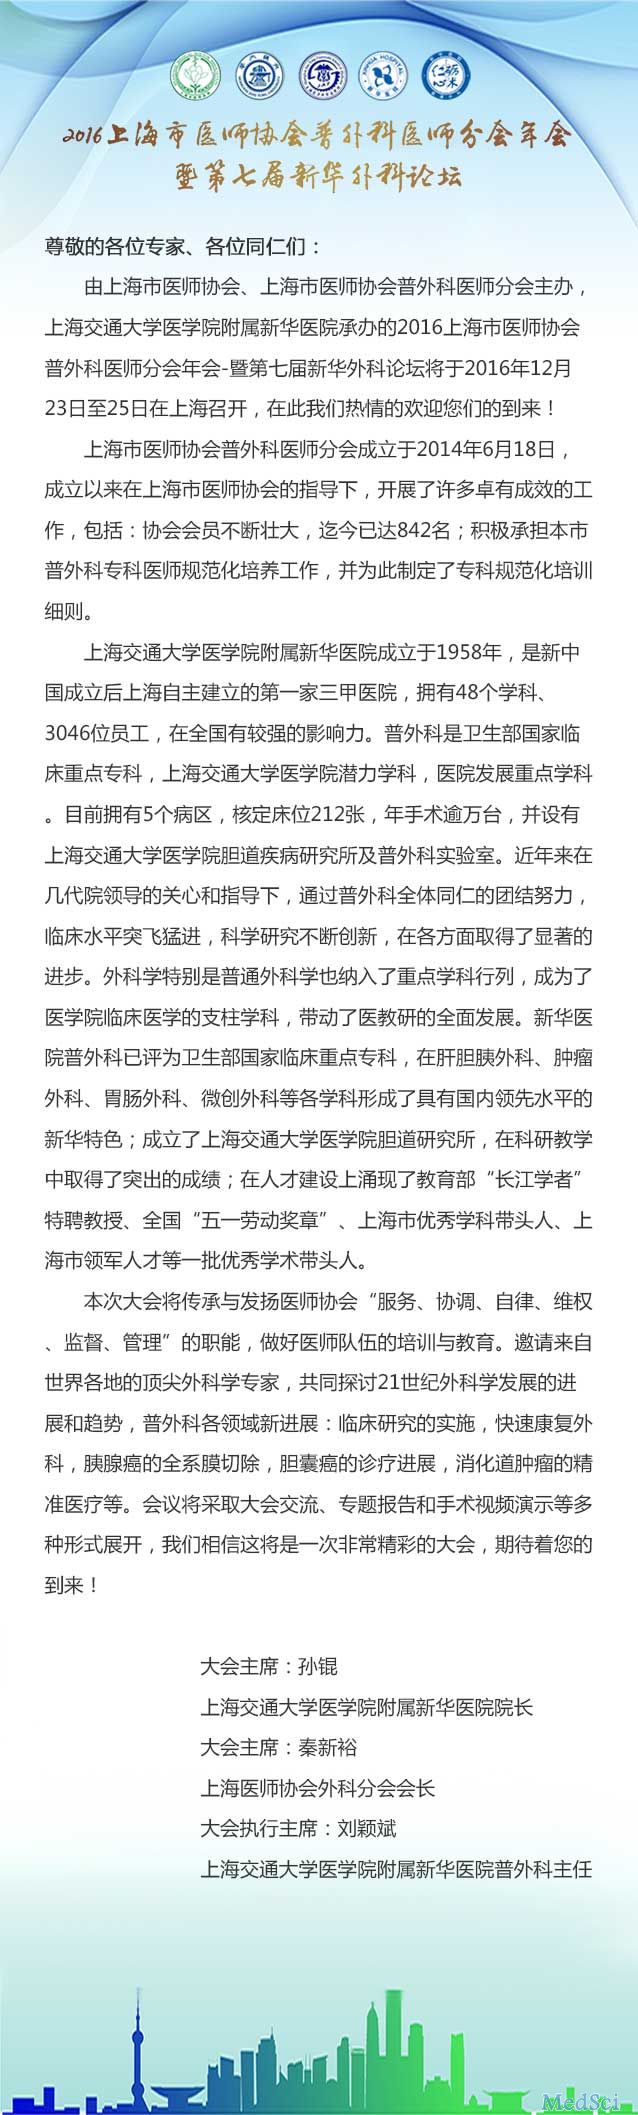 梅斯作为媒体参与2016上海医师协会<font color="red">普外科</font>医师分会年会暨第七届新华<font color="red">外科</font>论坛